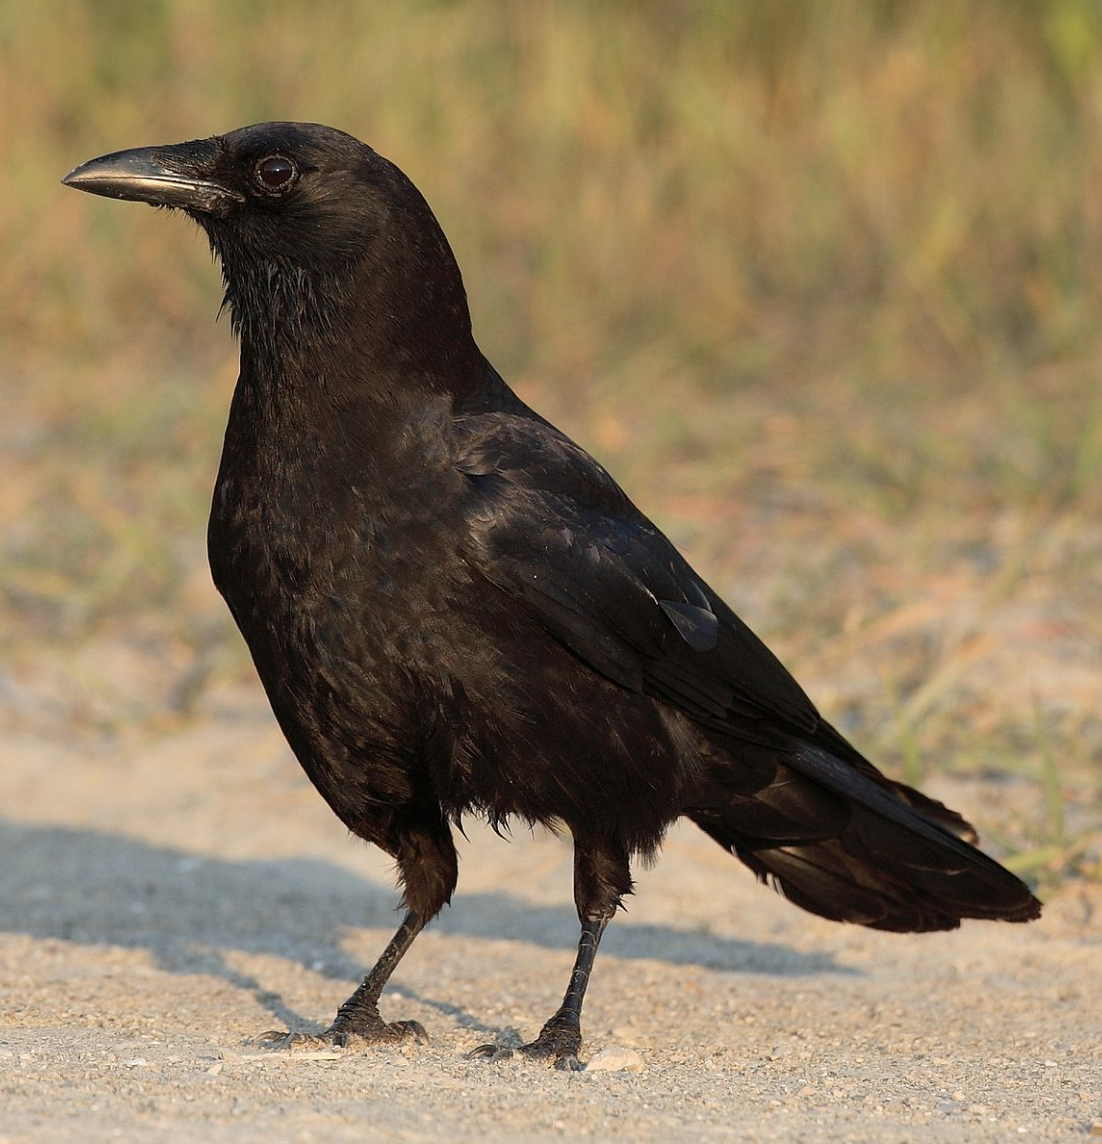 1. Crow